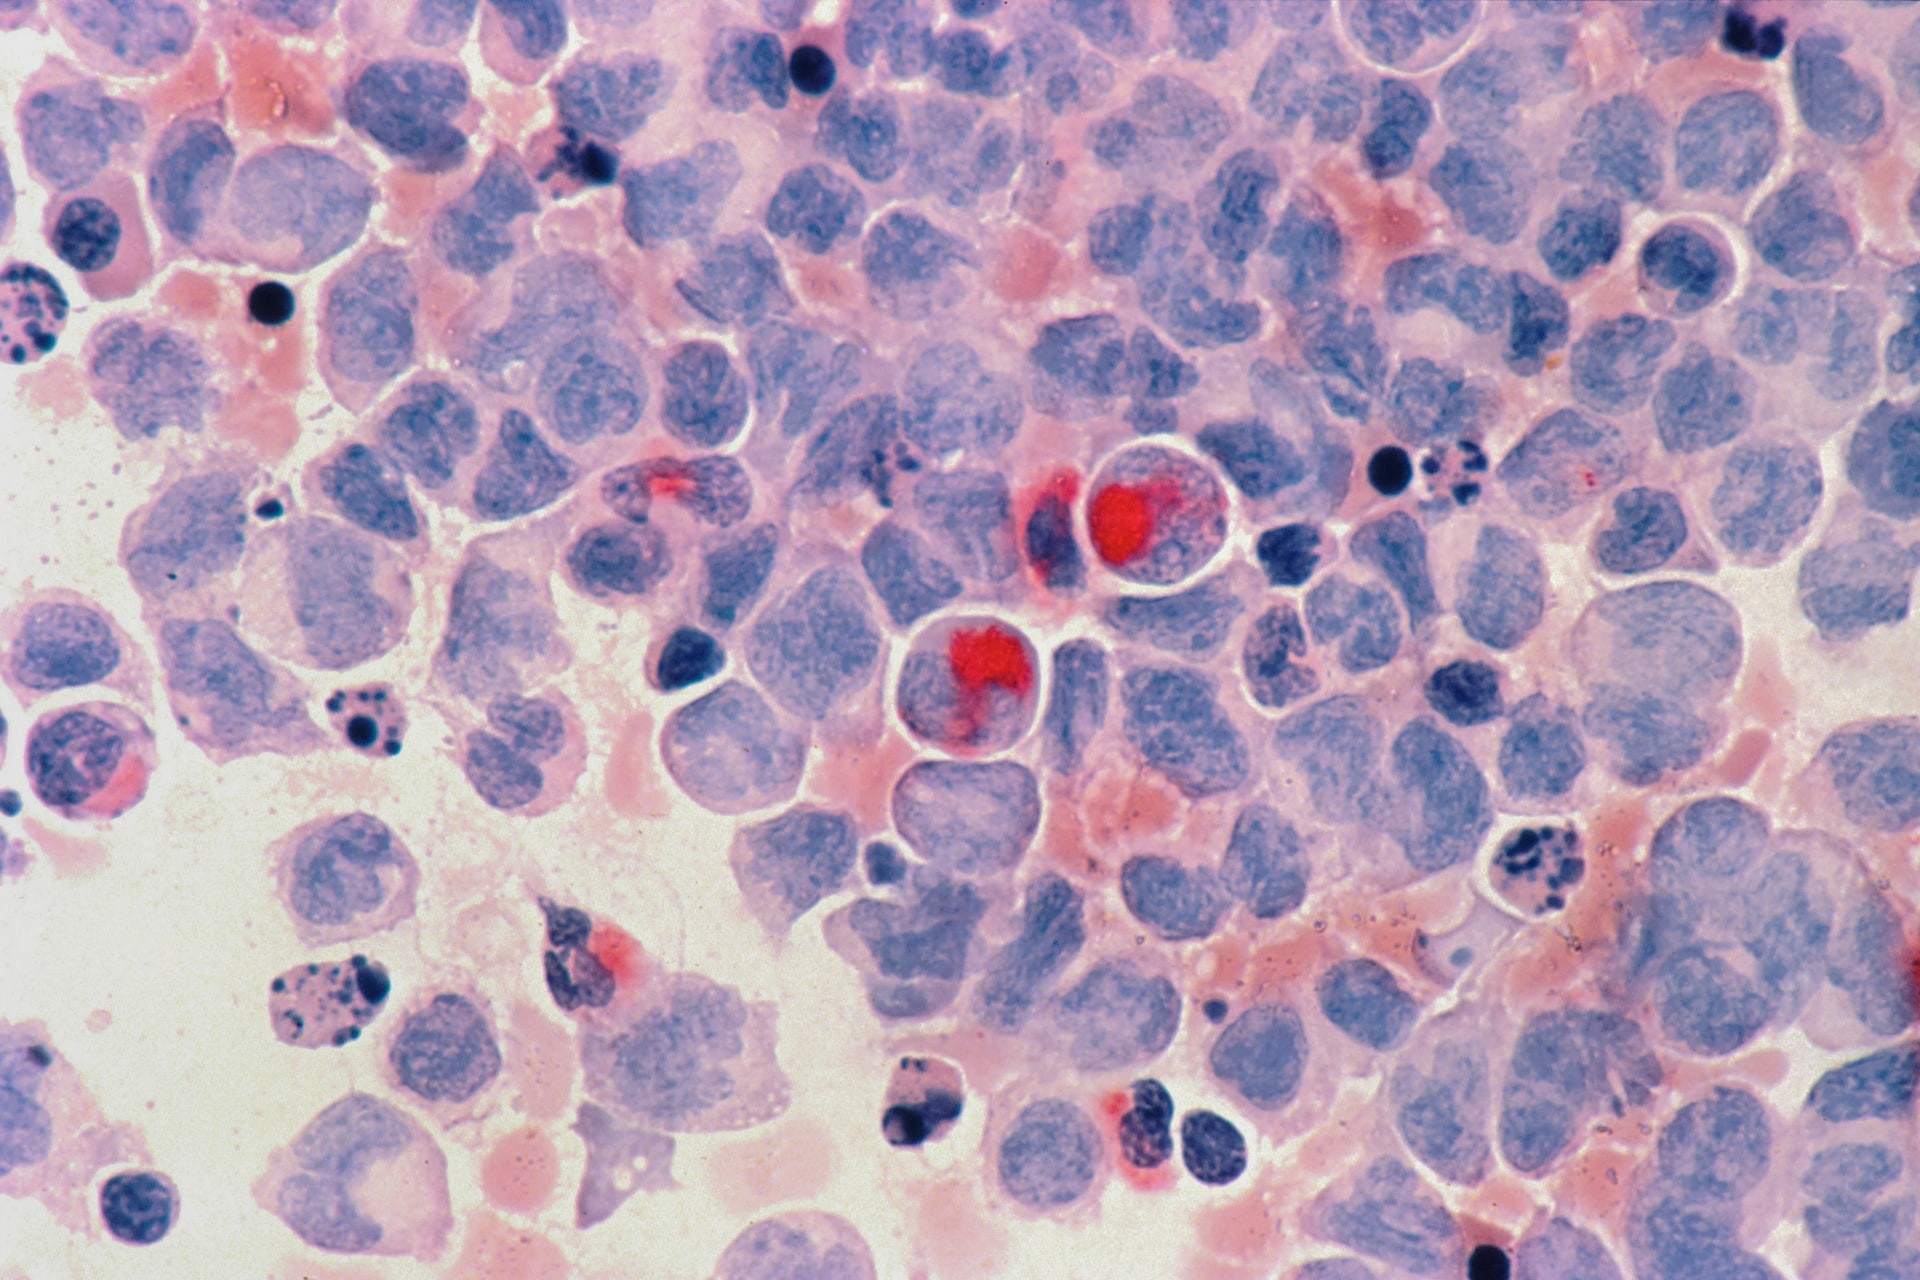 Células com leucemia mielocítica aguda, tipo de câncer do sangue e da medula óssea (Foto: National Cancer Institute )